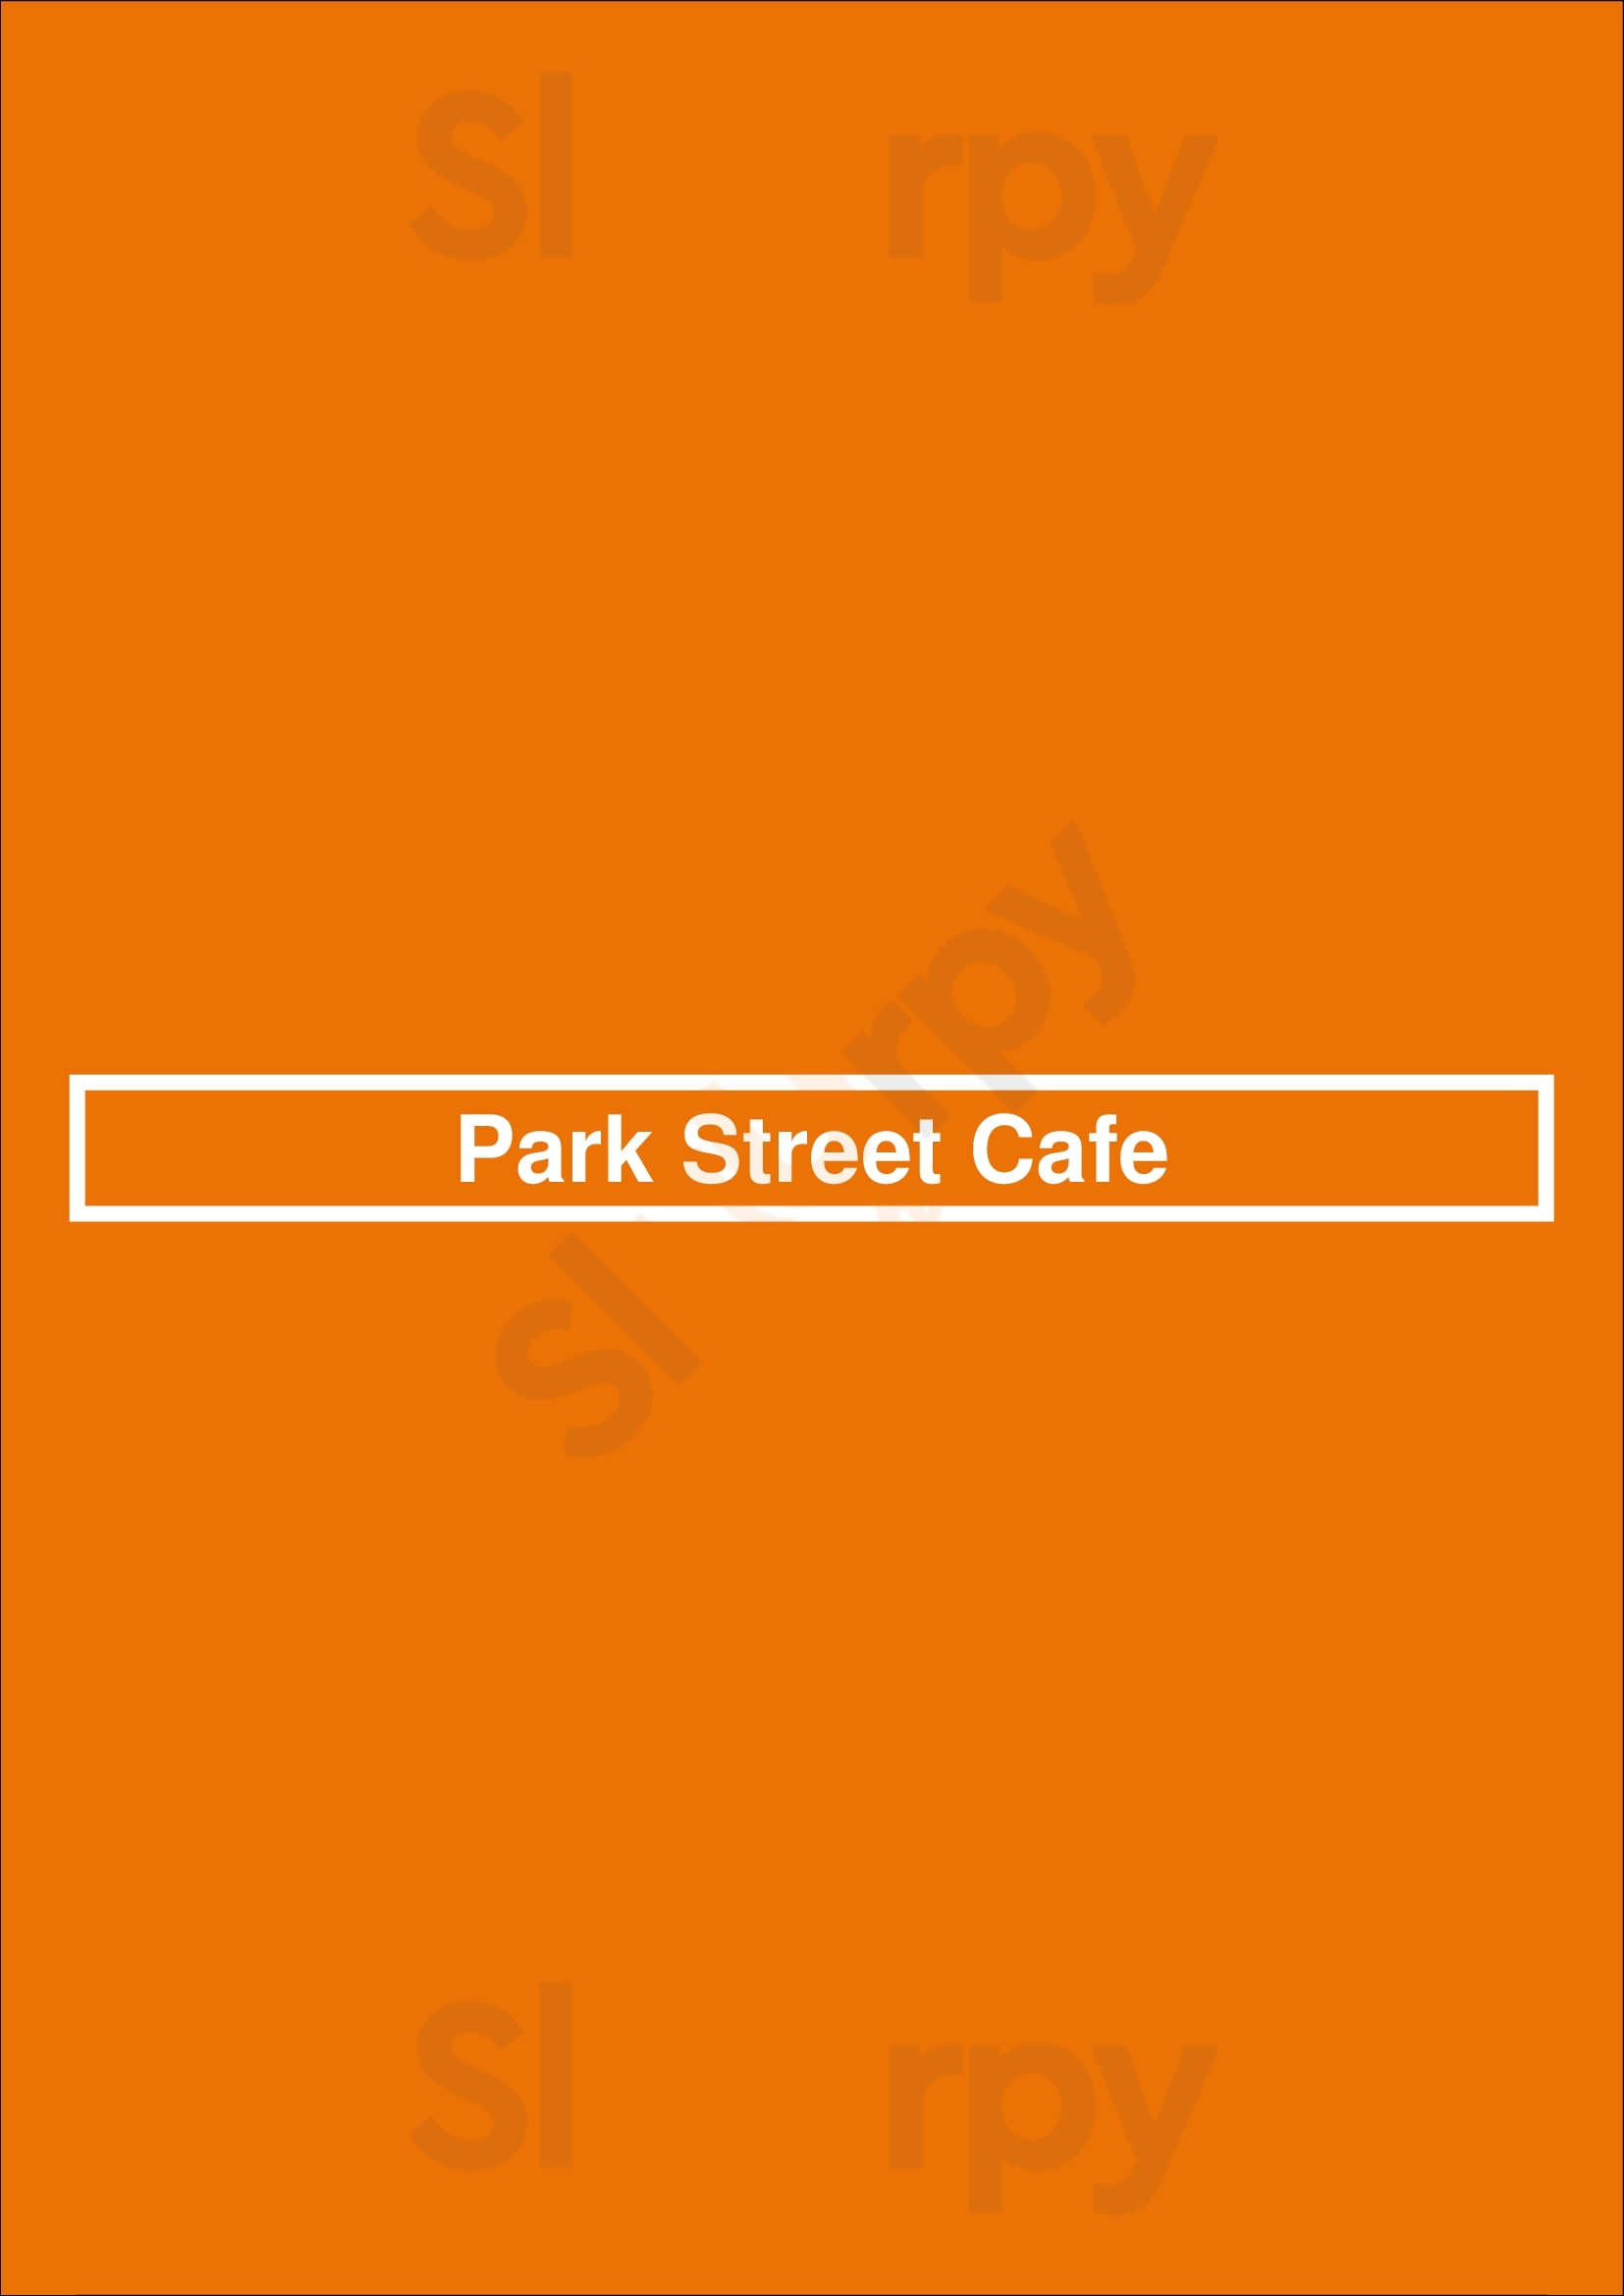 Park Street Cafe Eugene Menu - 1